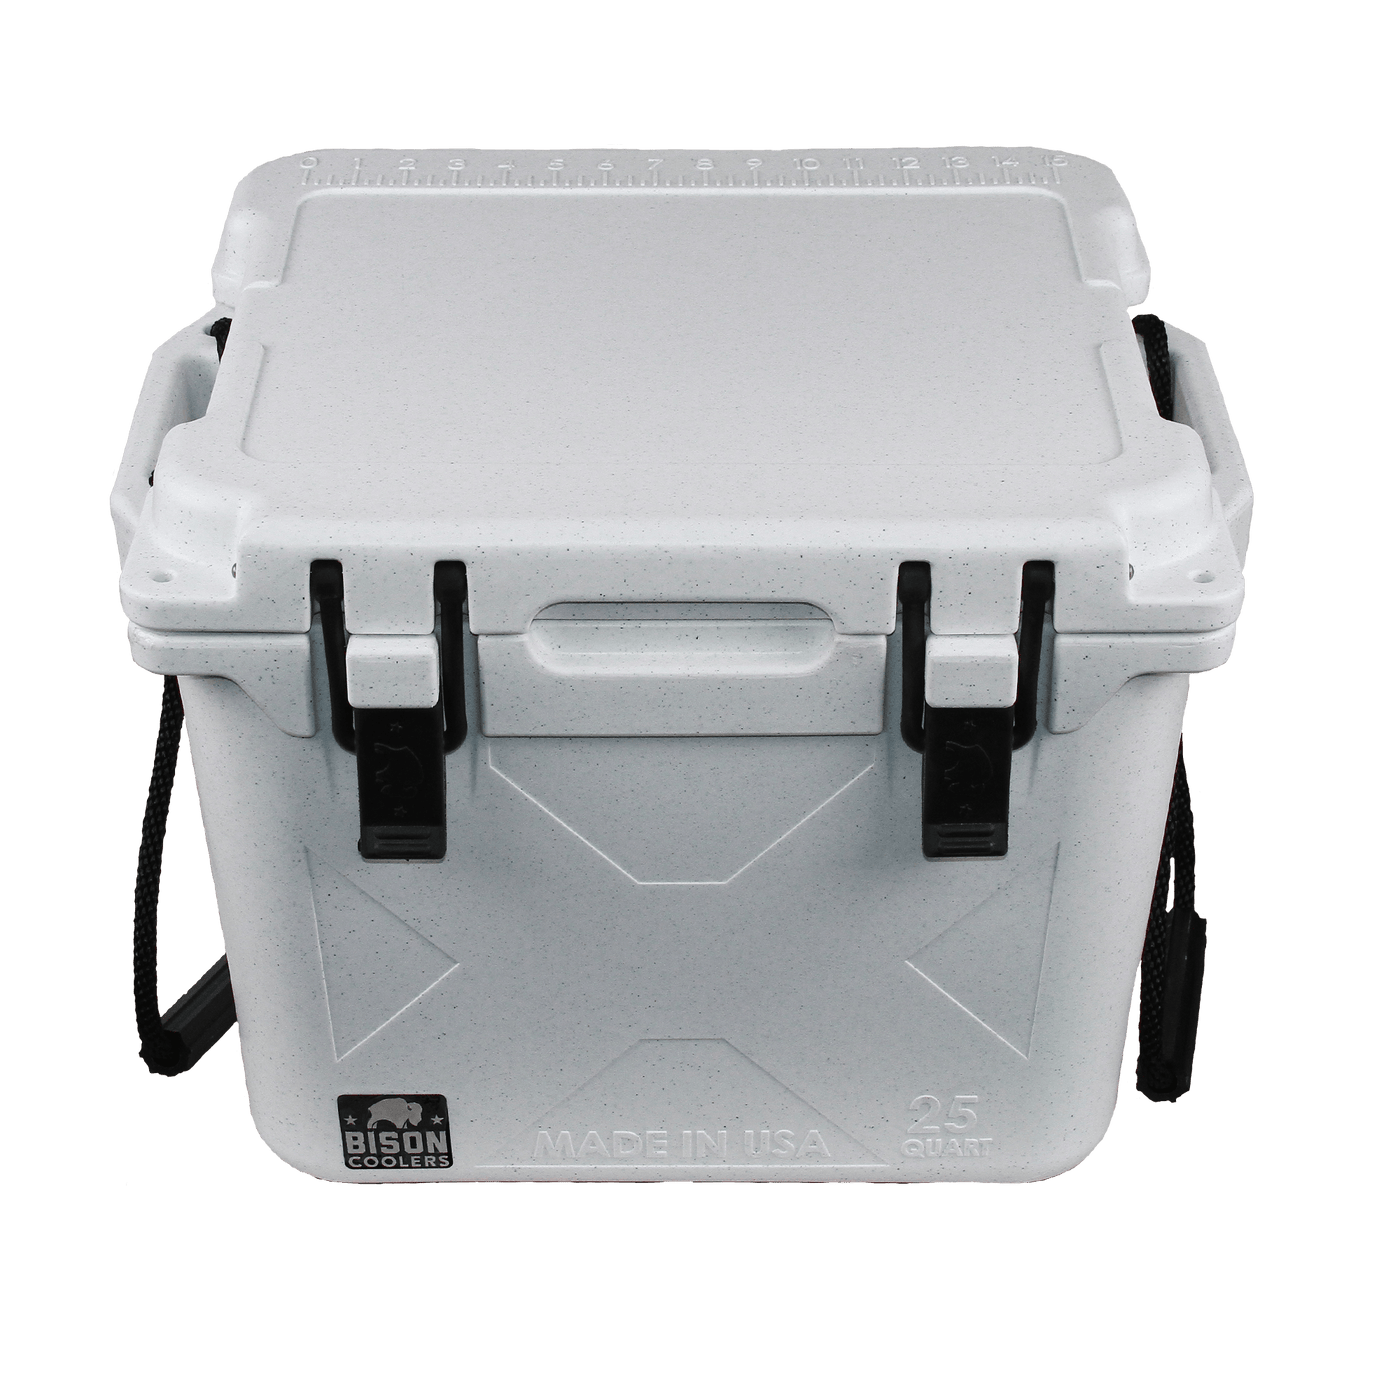 F3 - White 25 QT Bison Cooler